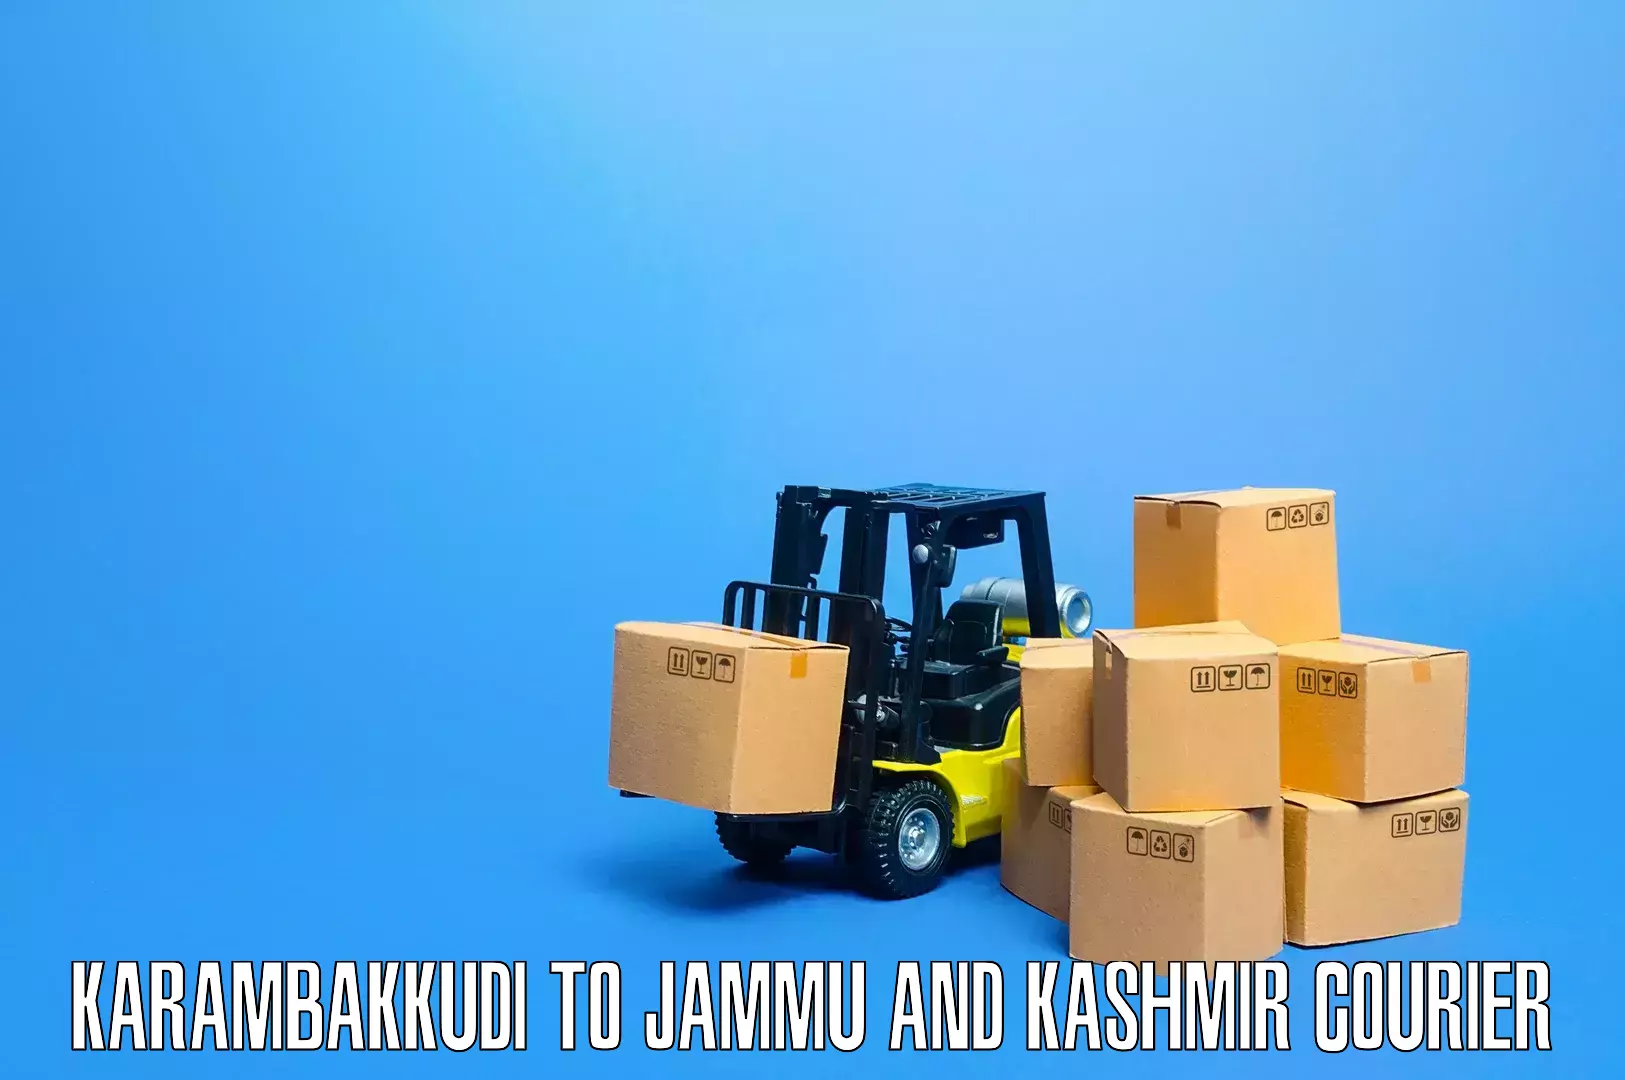 Household moving experts Karambakkudi to Kargil